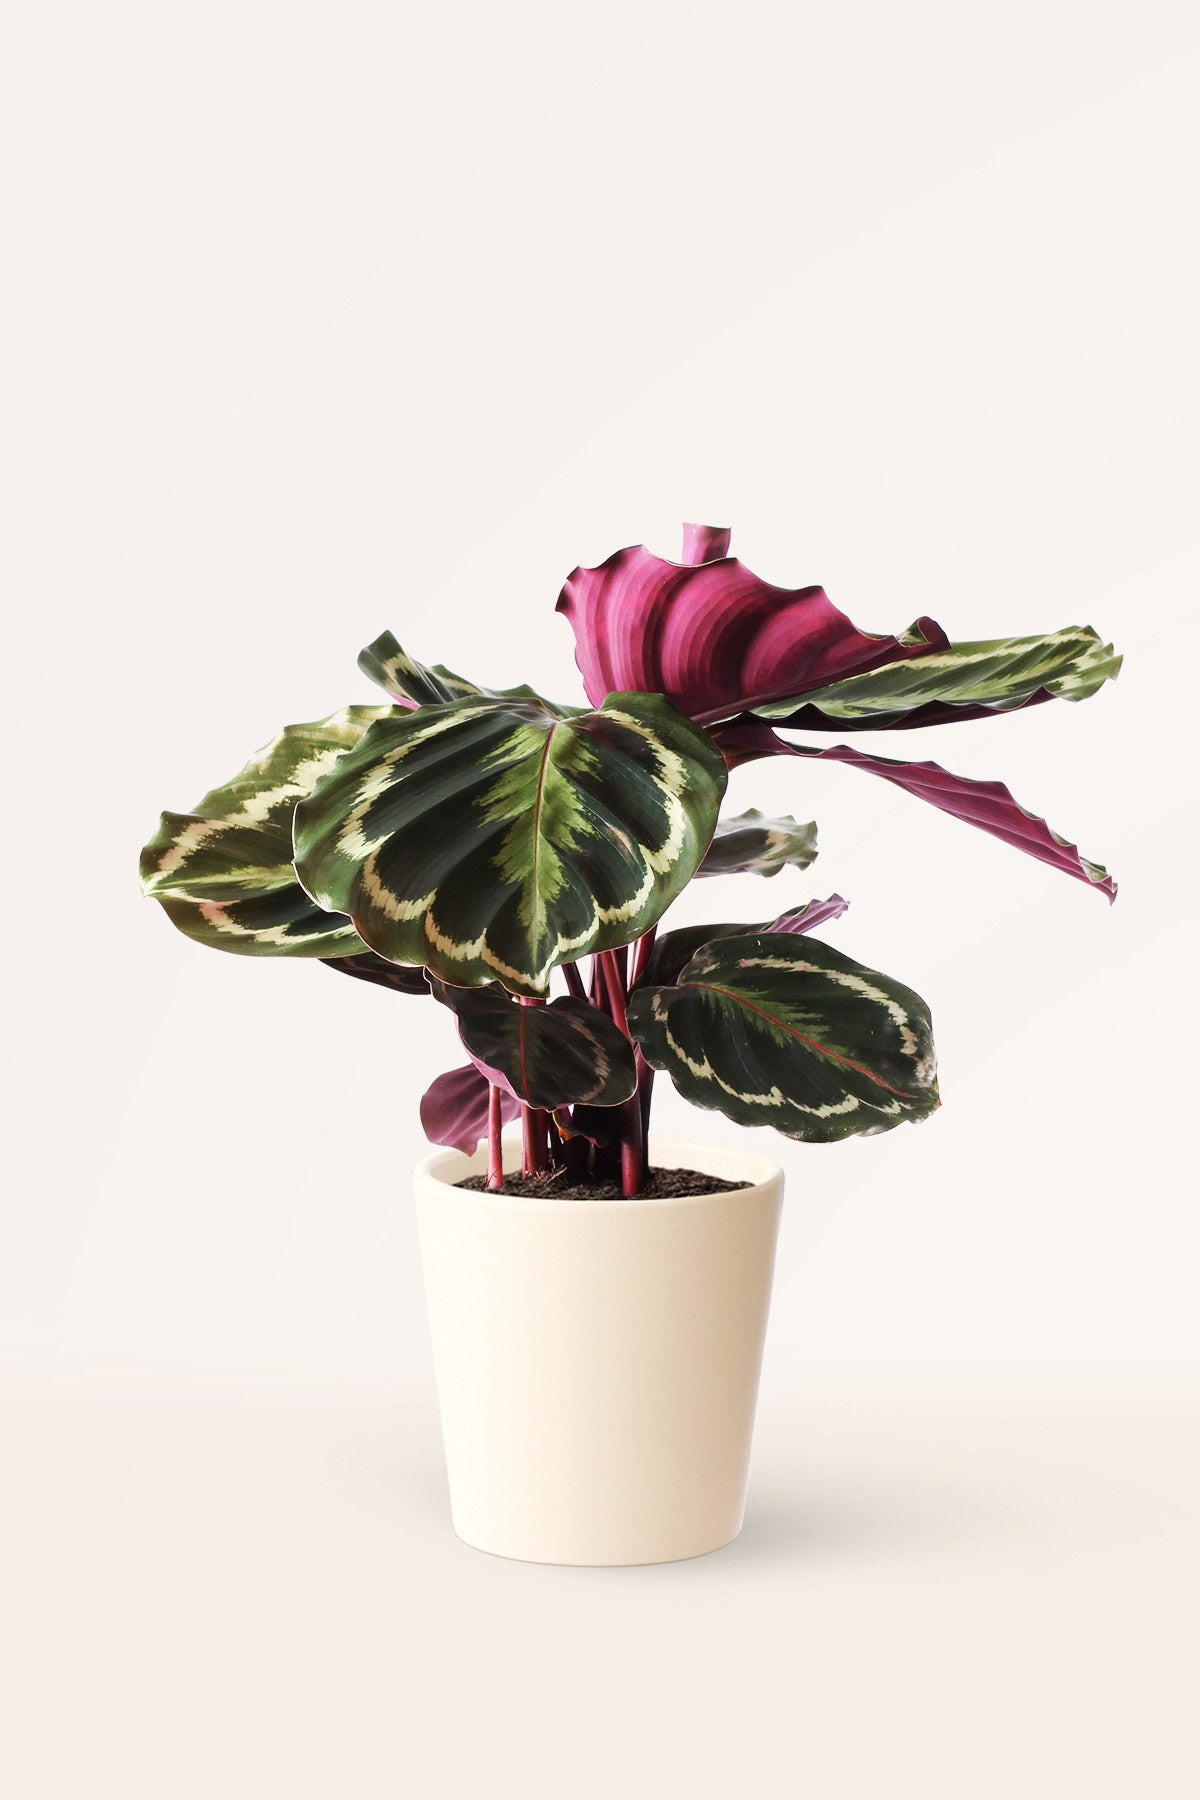 Calathea Medallion | Comprar plantas online | Plantas de interior |  APRILPLANTS